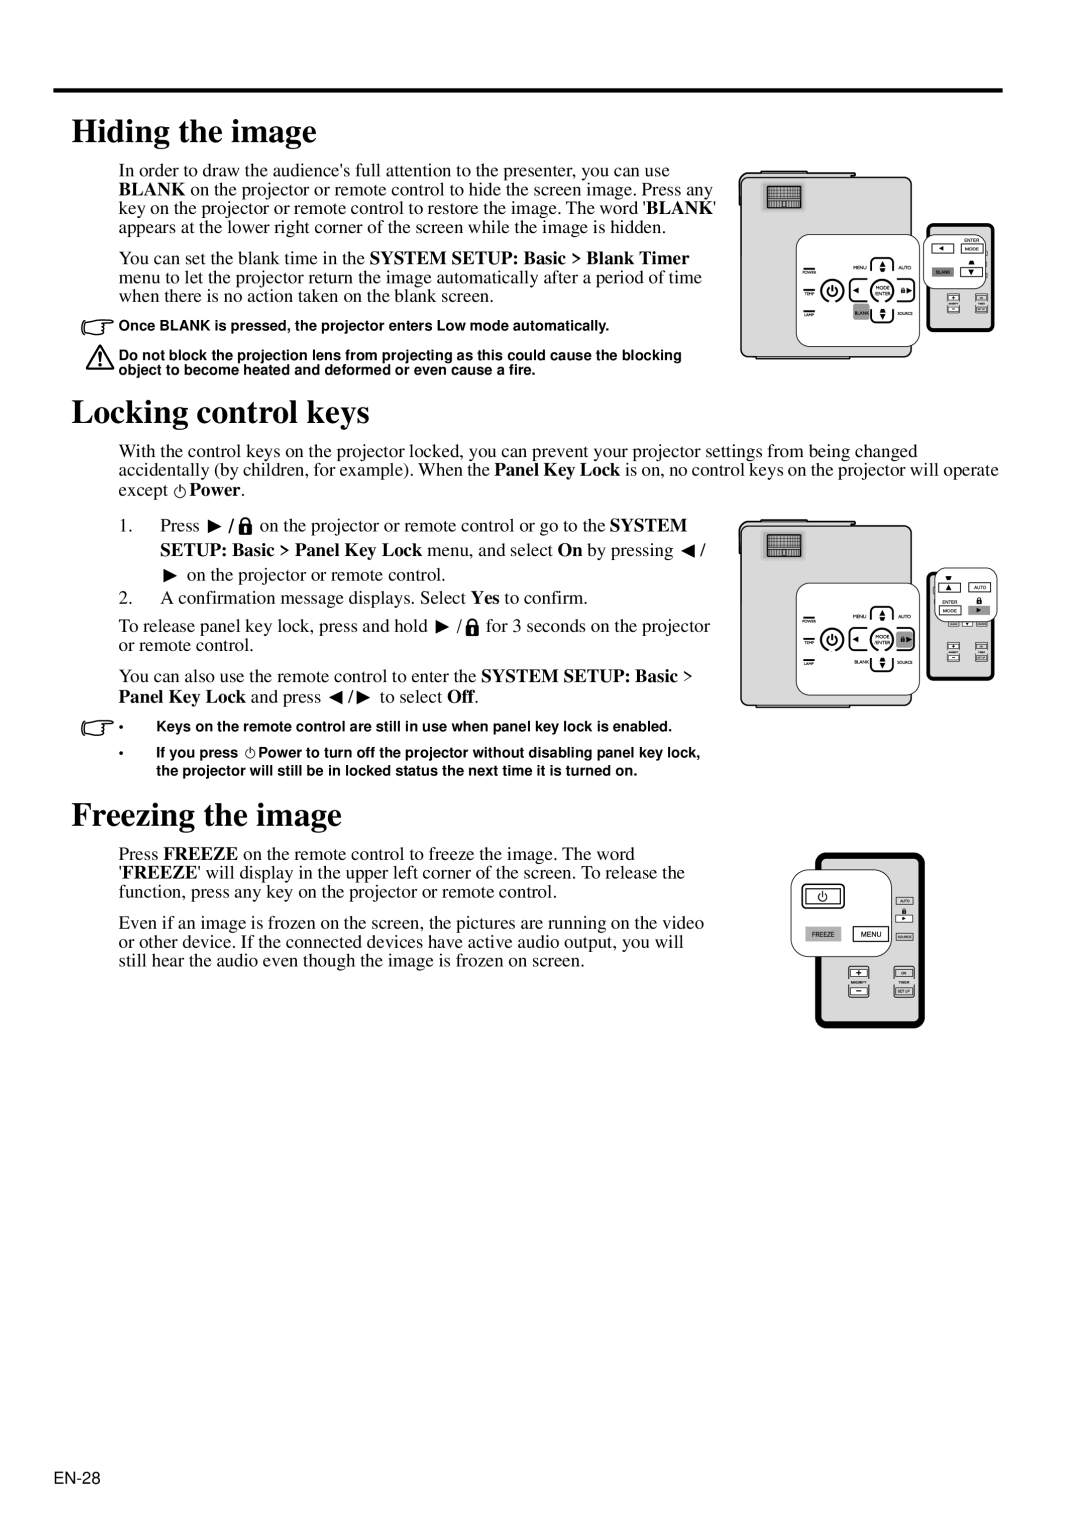 Mitsubishi Electronics XD95U user manual Hiding the image, Locking control keys, Freezing the image 